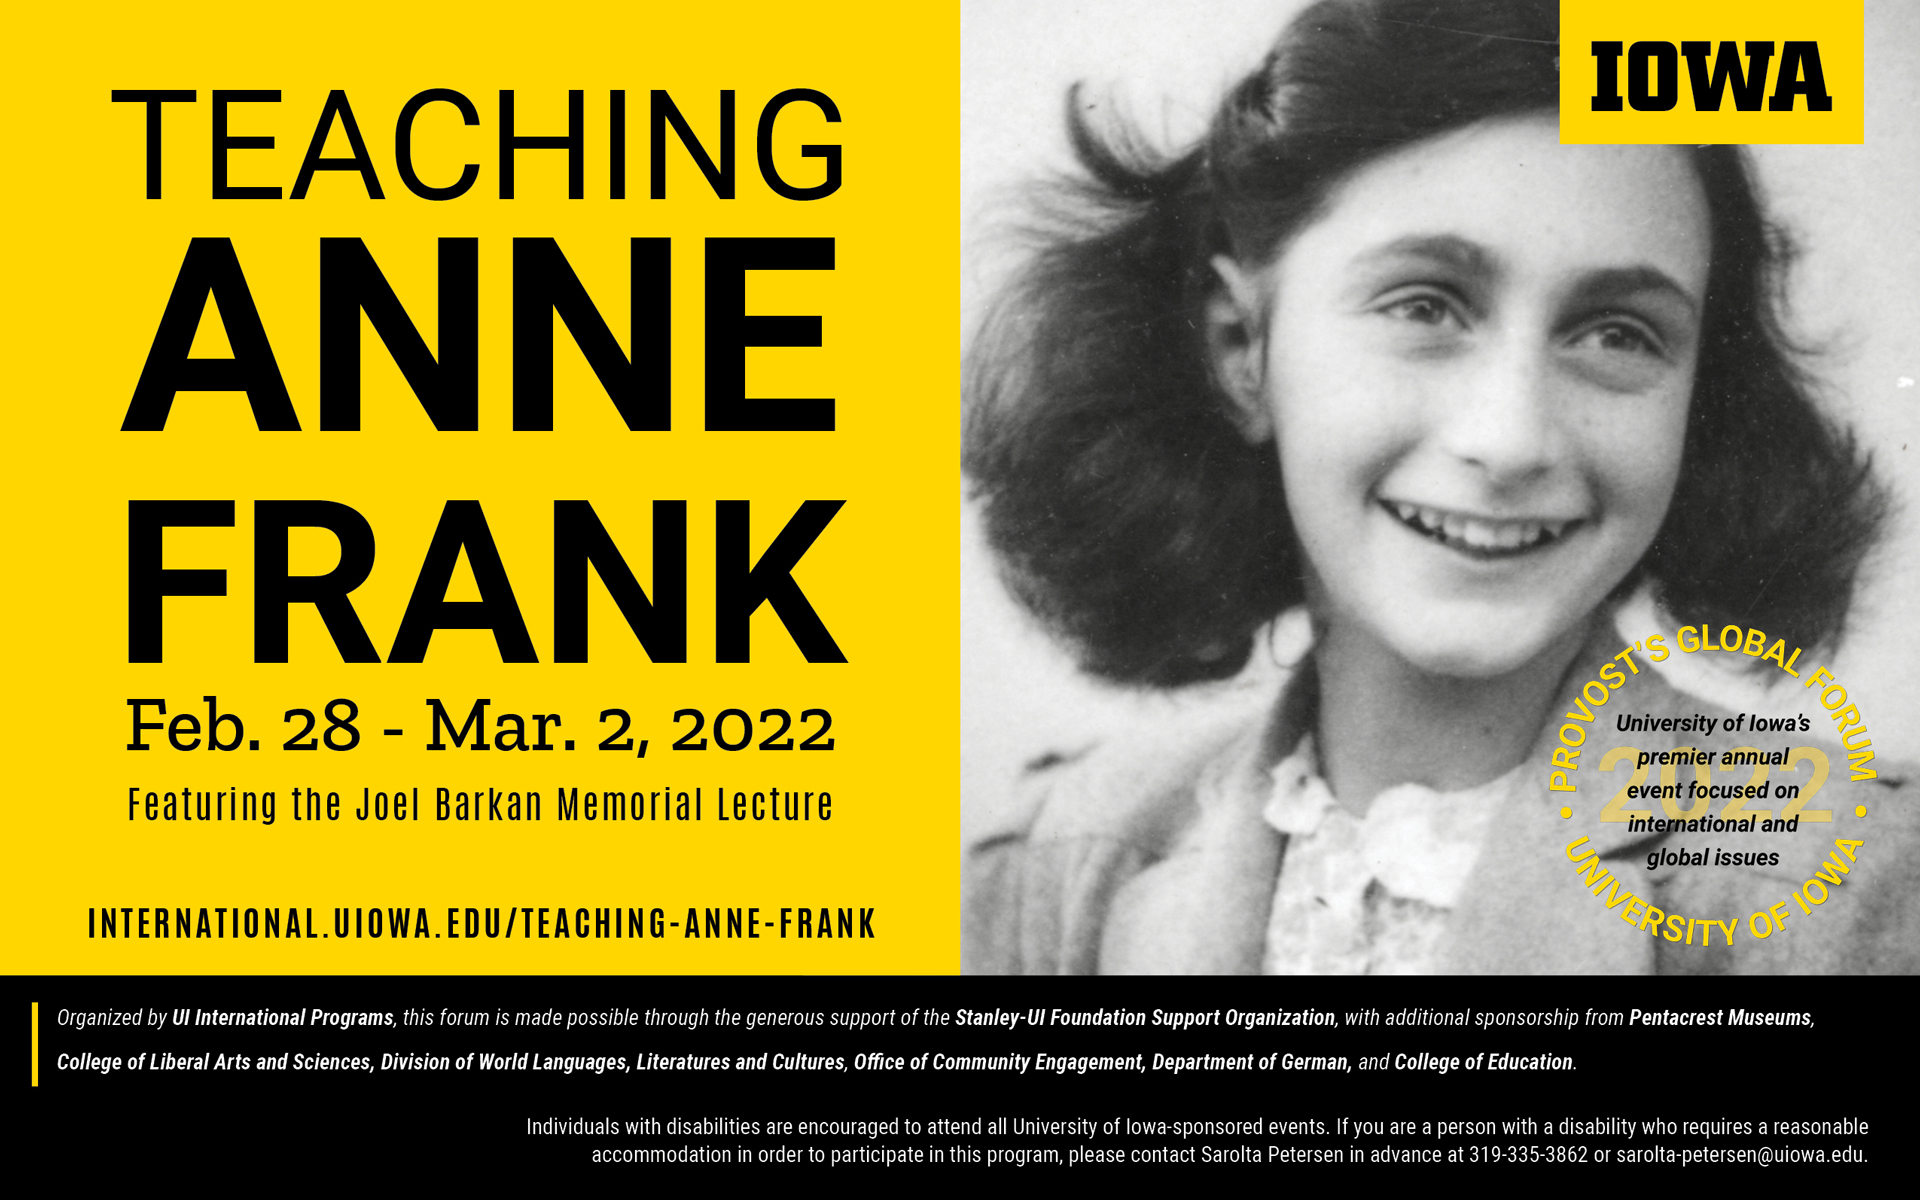 Teaching Anne Frank